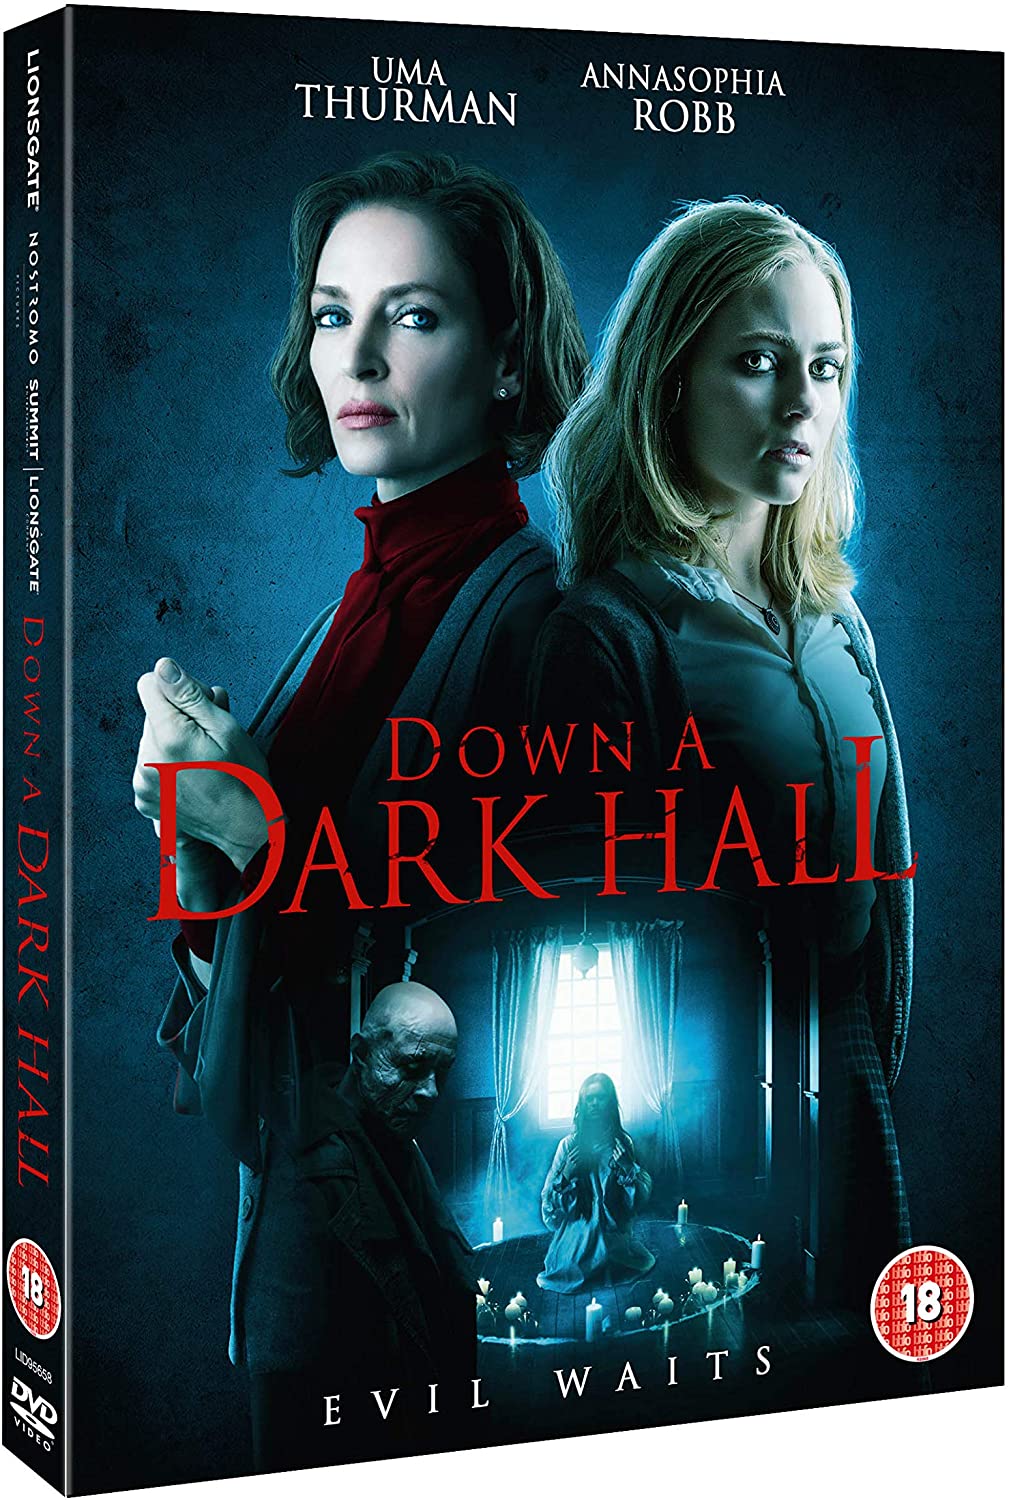 Down A Dark Hall - Horror/Thriller [DVD]